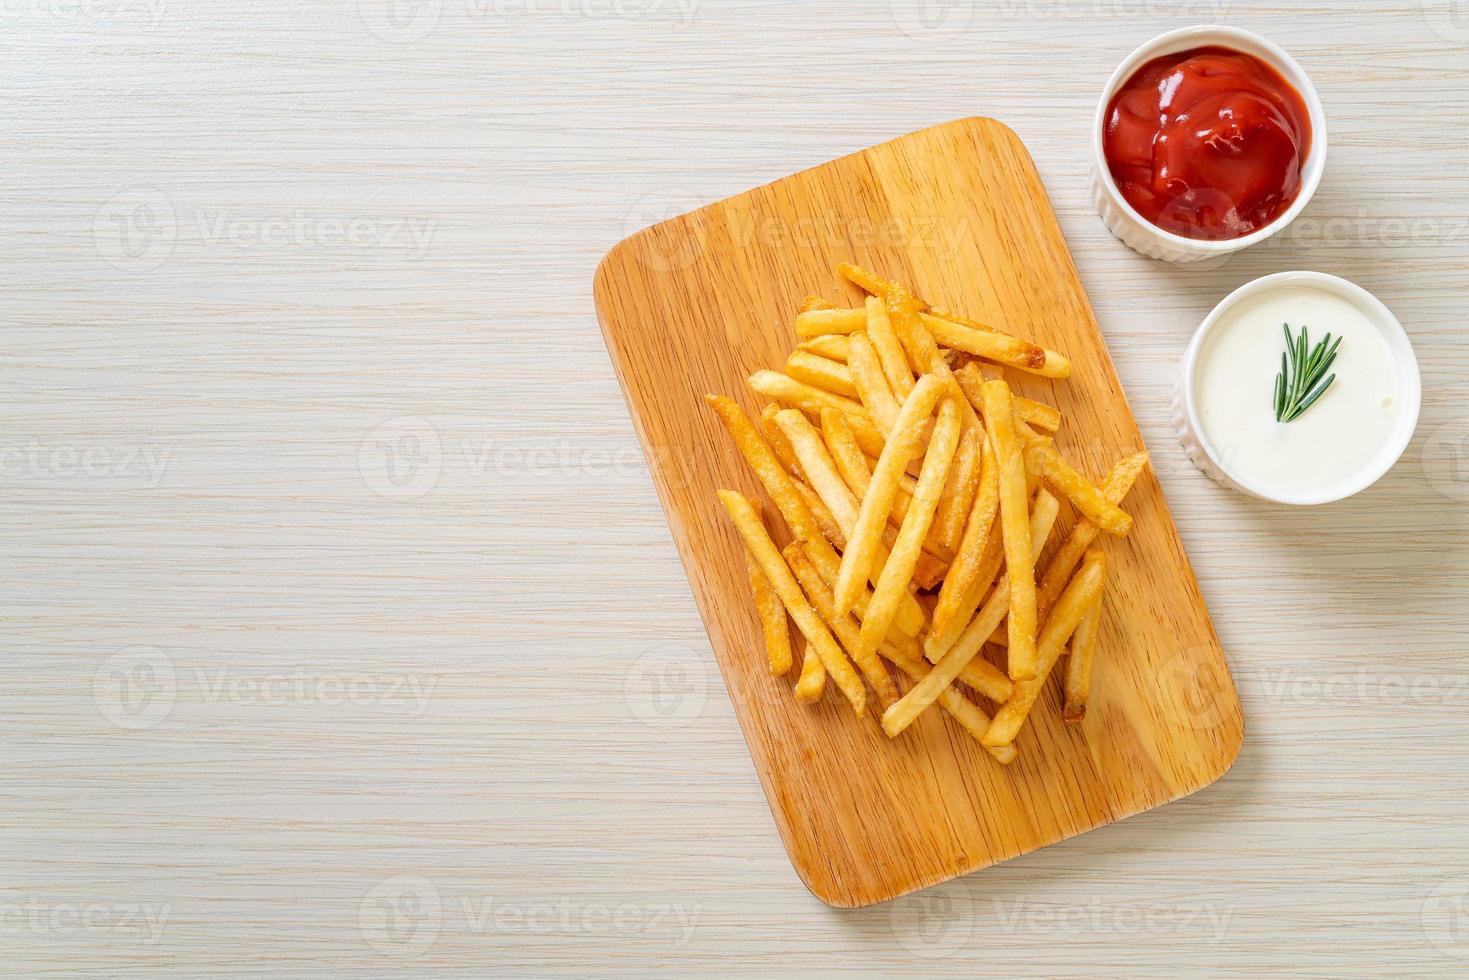 frietjes met zure room en ketchup foto